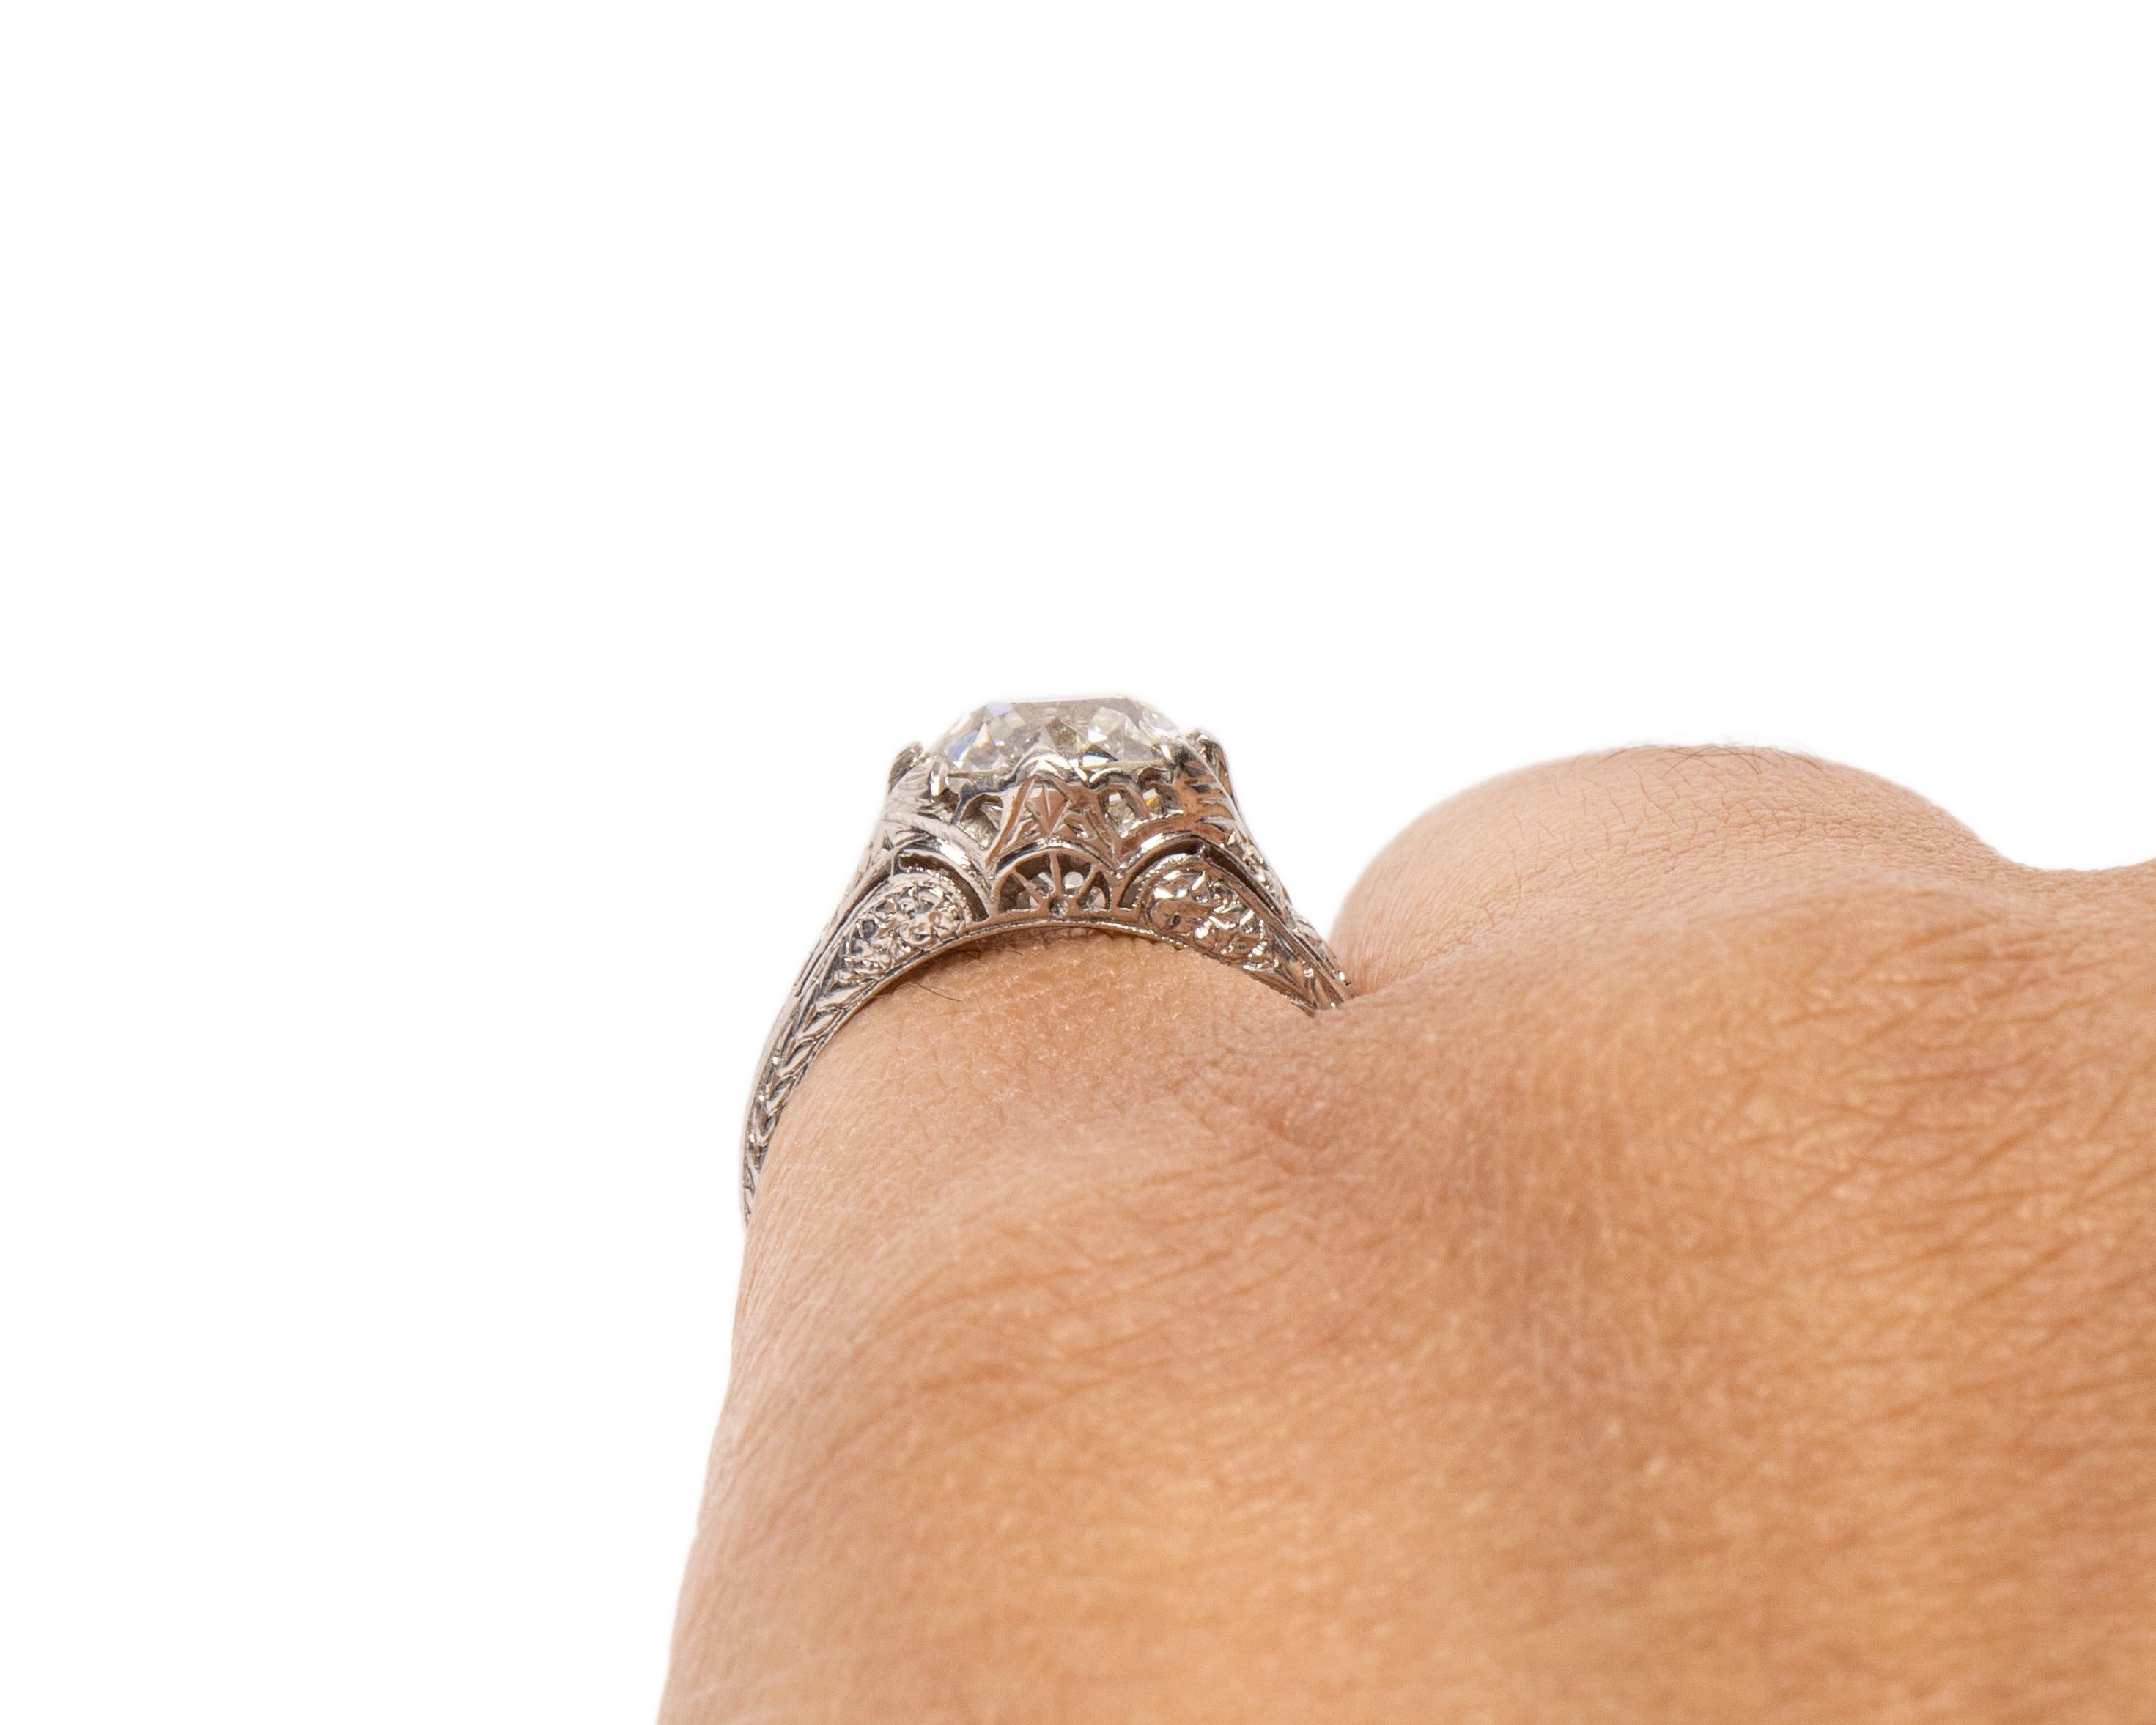 Women's GIA Certified 2.01 Carat CD Peacock Edwardian Diamond Platinum Engagement Ring